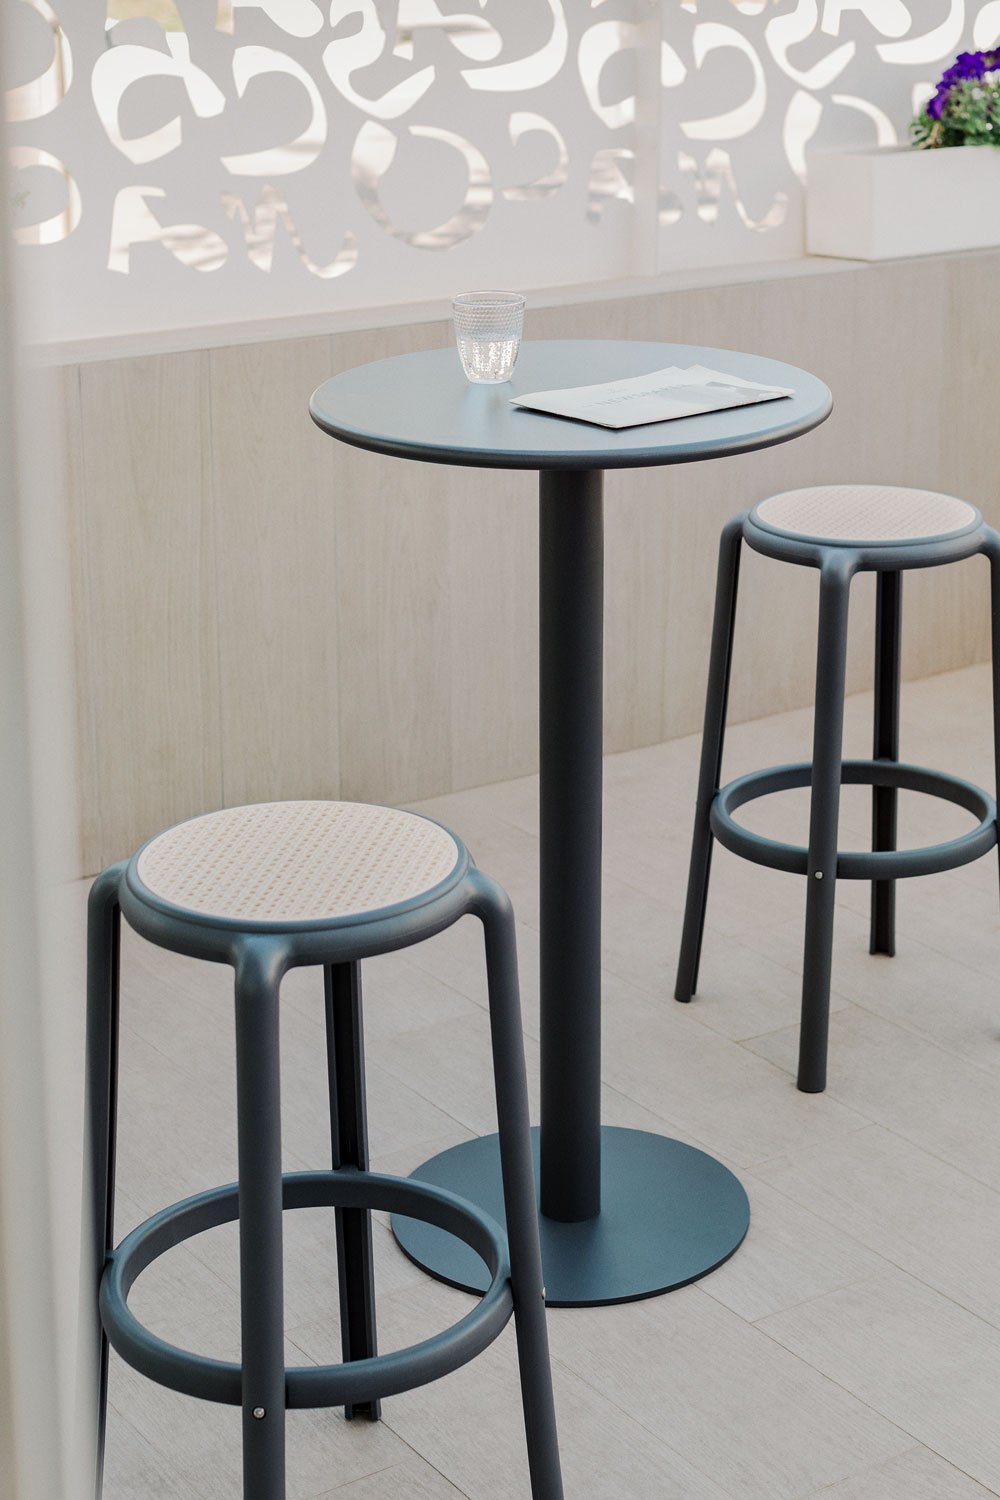 Set Tavolo Alto Mizzi Rotondo in Metallo (Ø60 cm) e 2 Sgabelli Alti da Giardino Omara, immagine della galleria 1